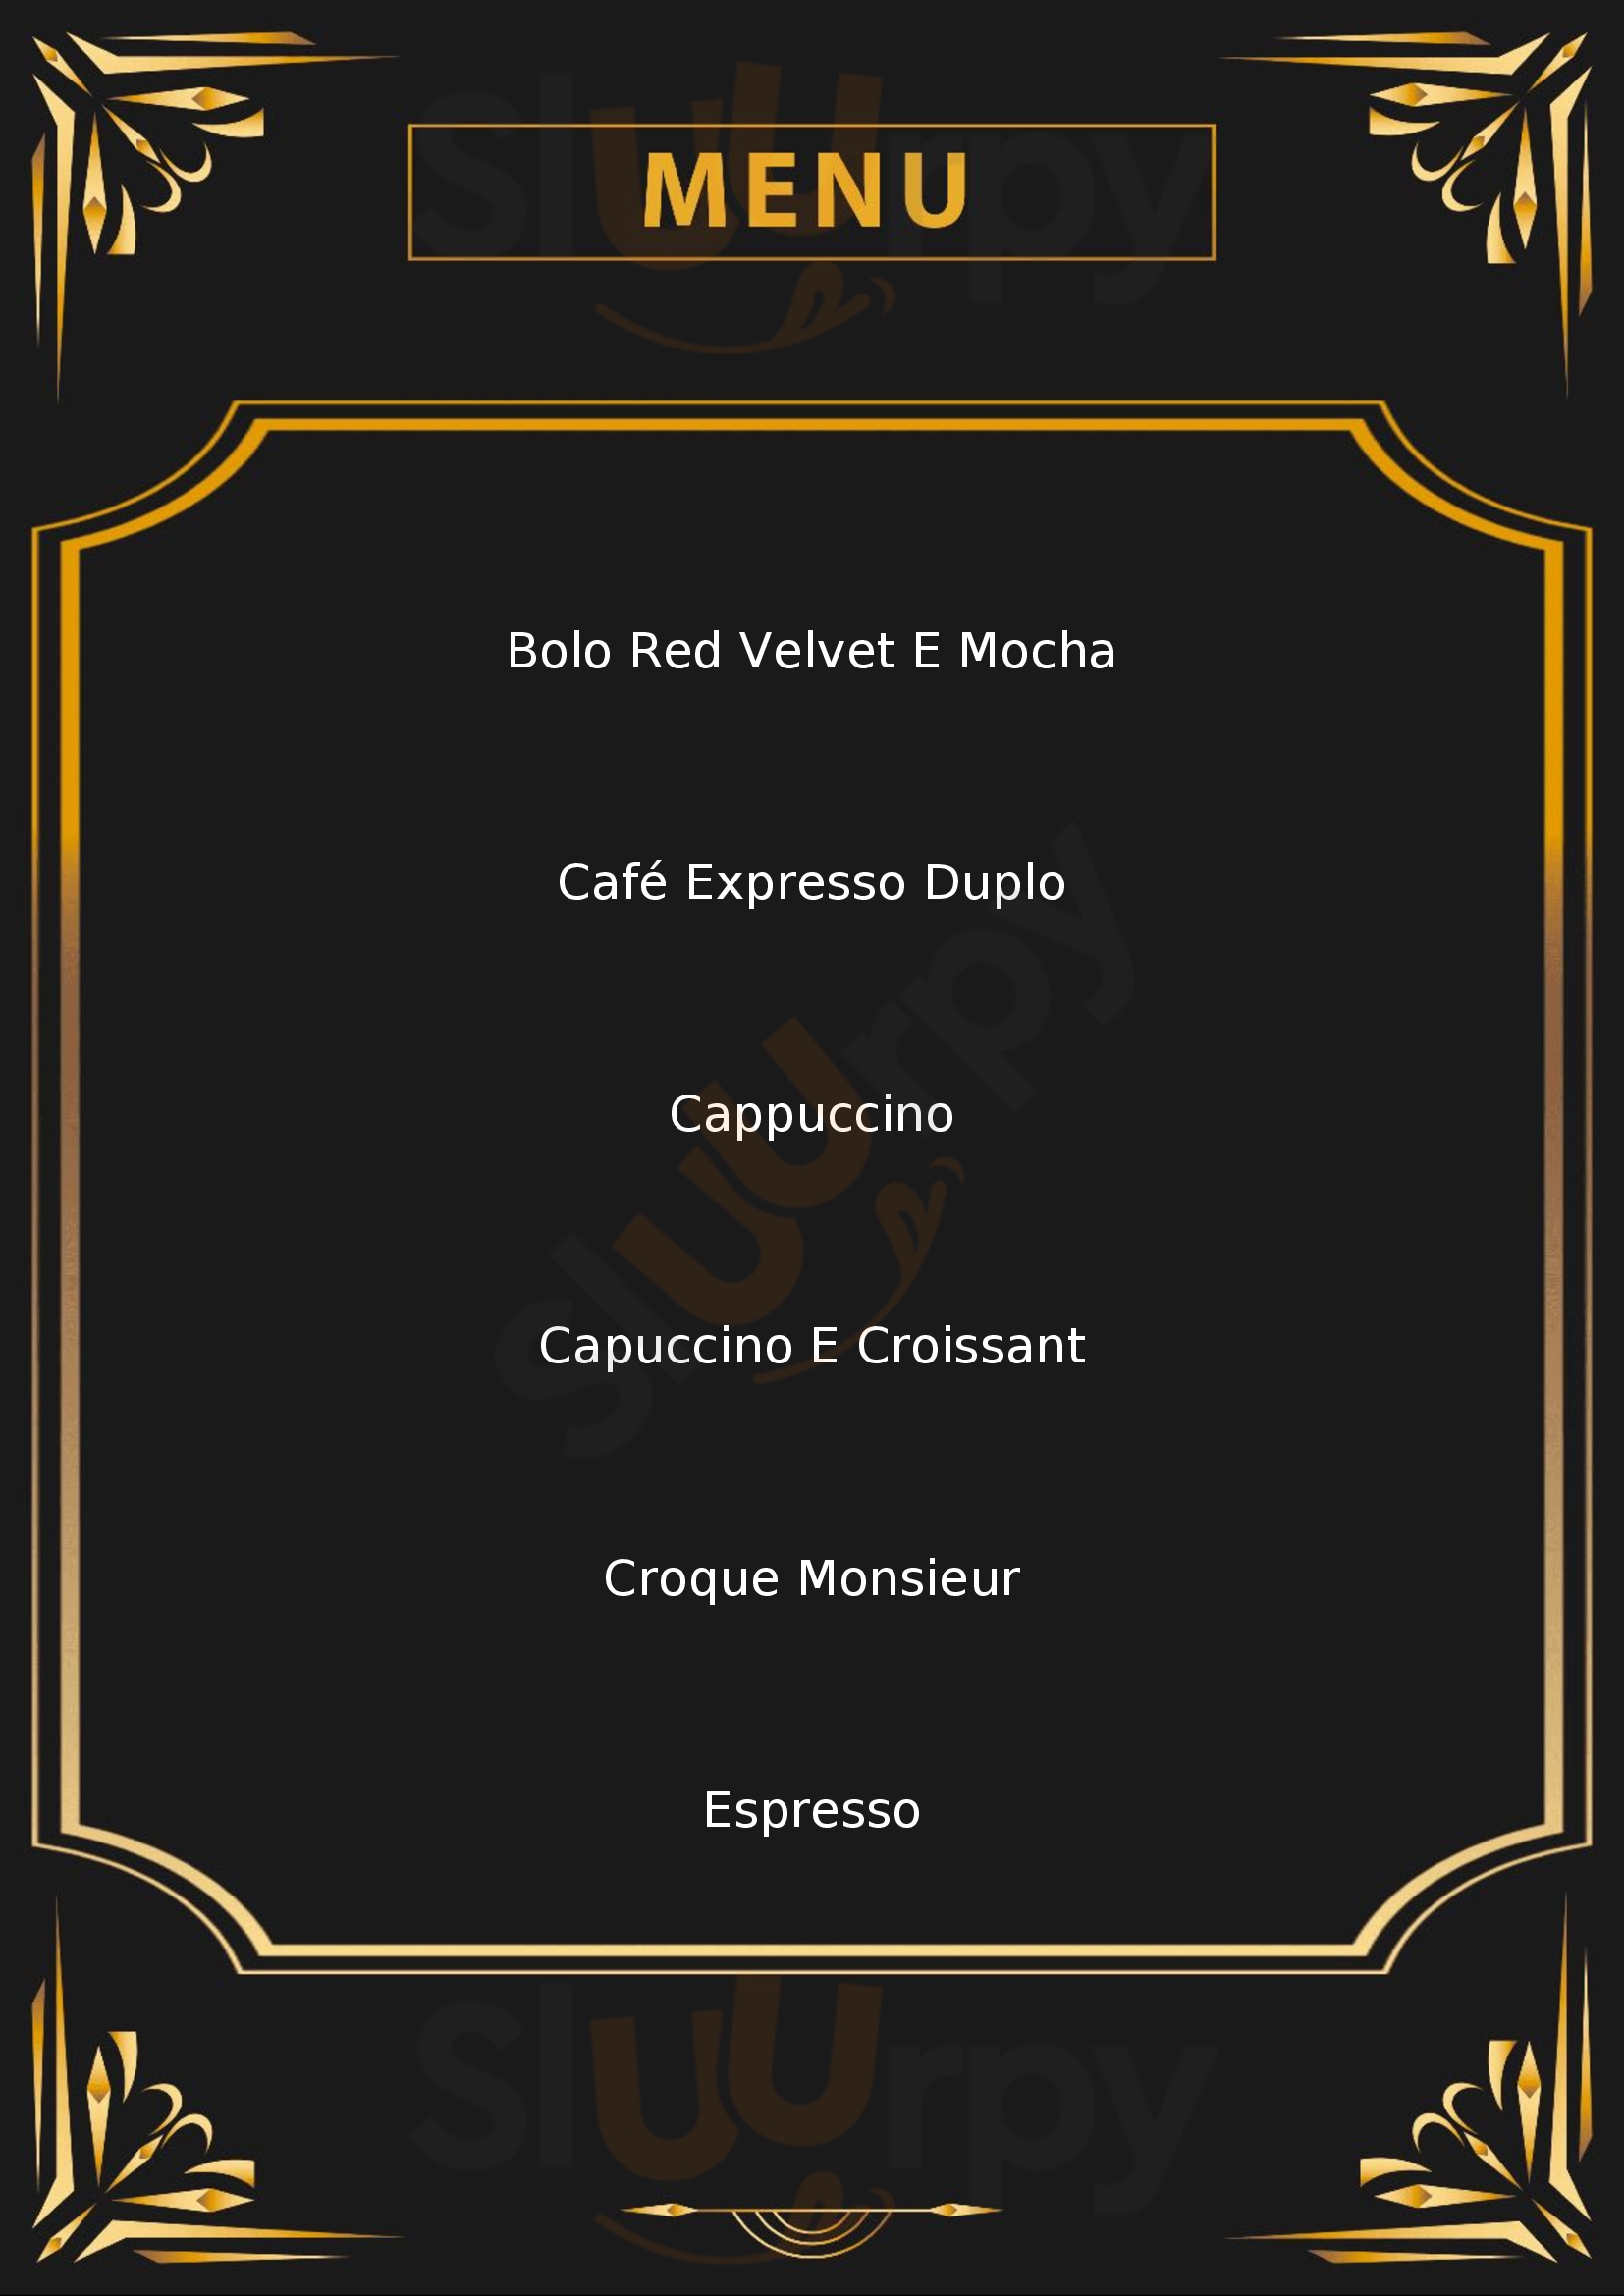 Domo Café Italian Experience Taubaté Menu - 1